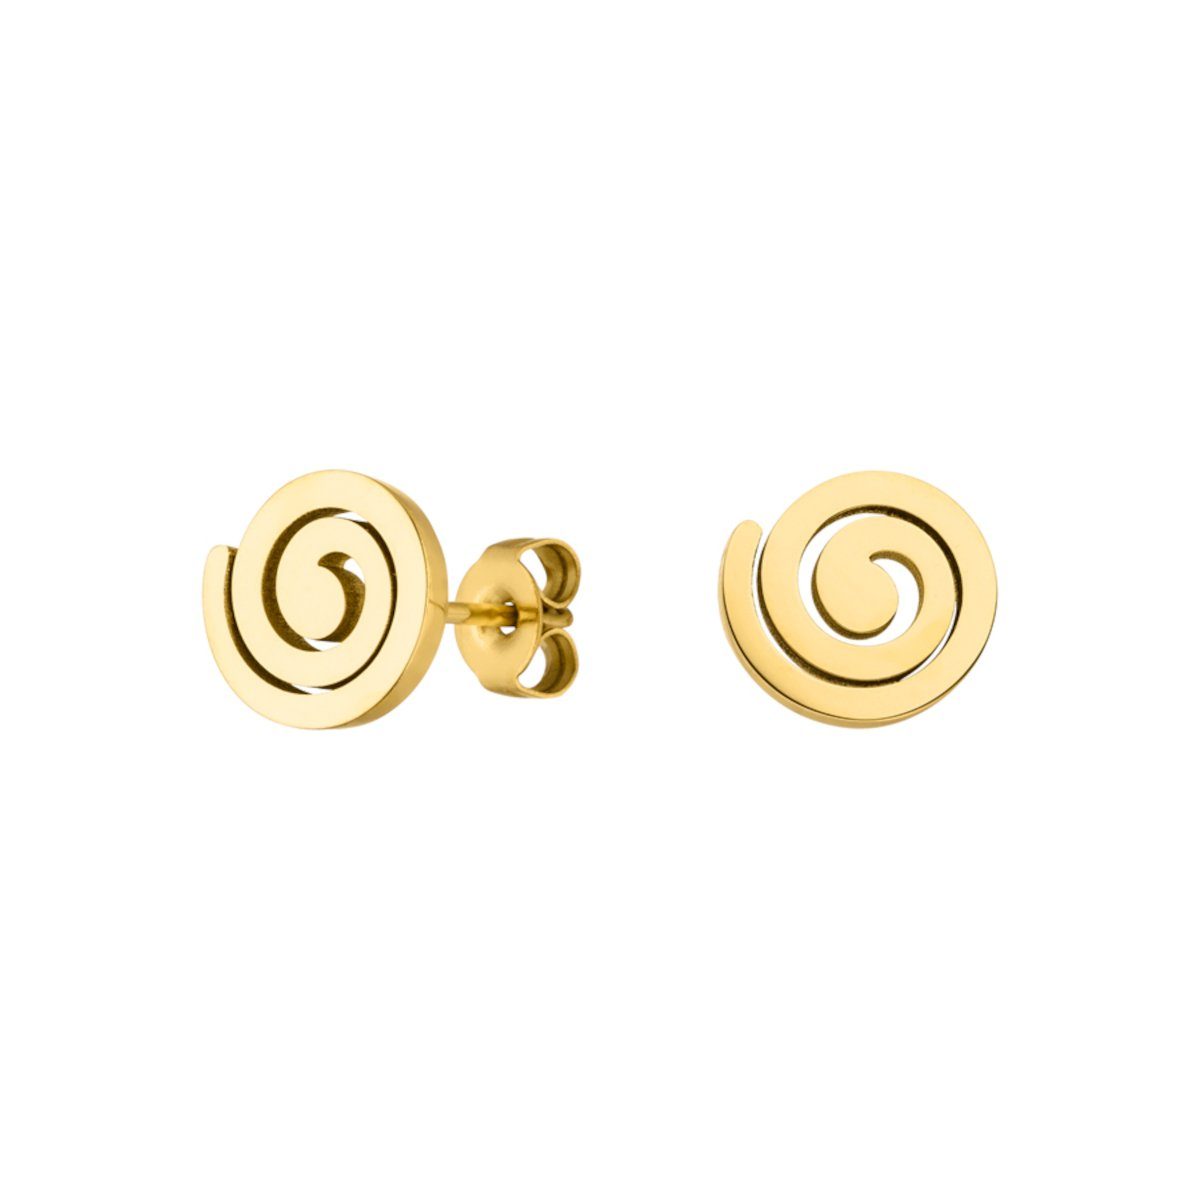 hautverträglich, wasserfest LIFESTYLE alltagstauglich, Schmuckbox inklusive Ohrstecker Design, LUUK schöner Gold Spirale, modernes & Paar